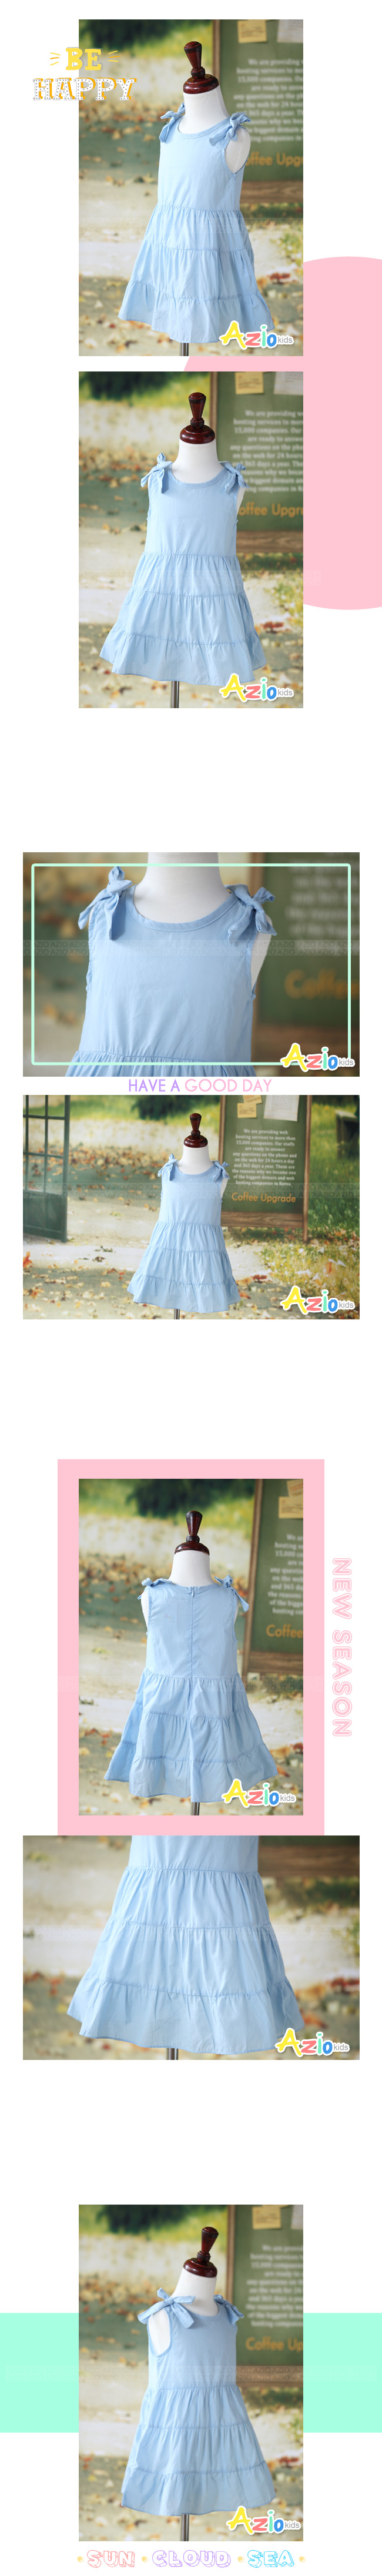 Azio 女童 洋裝 綁帶設計無袖蛋糕洋裝(藍